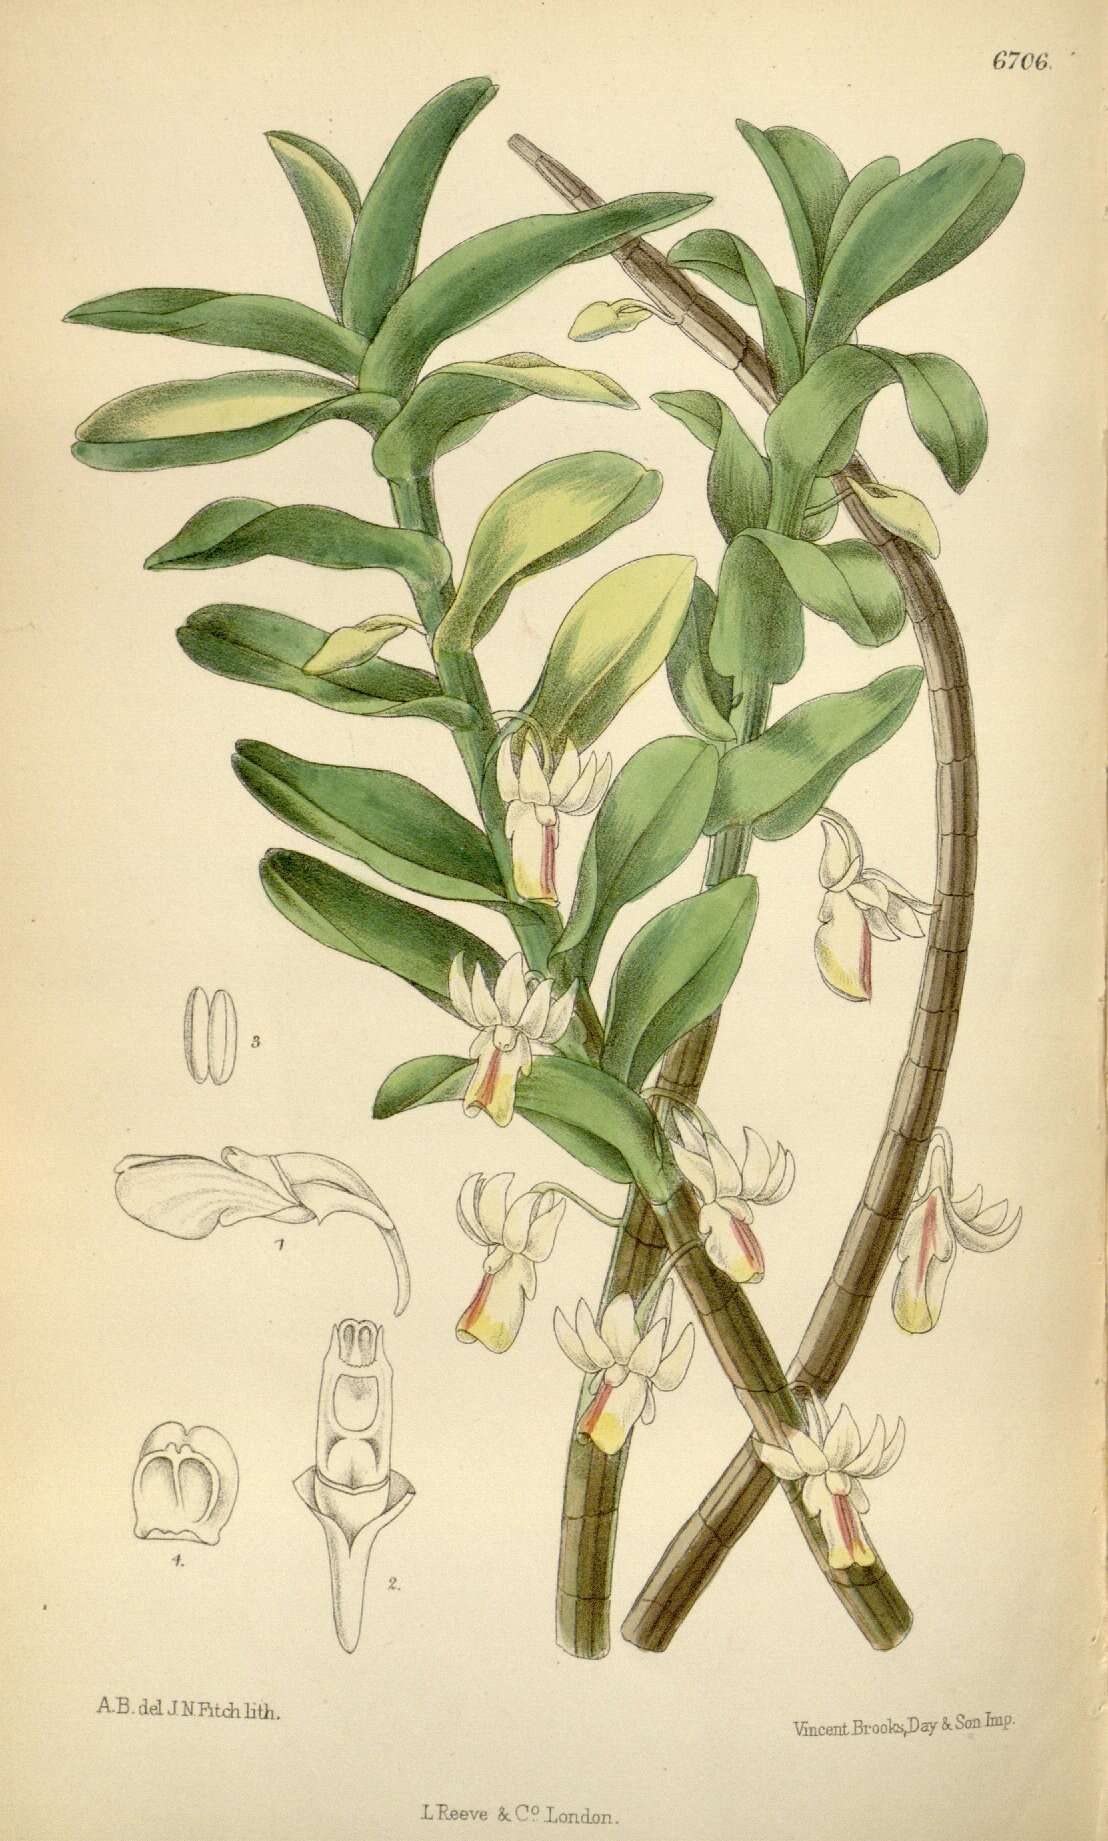 Image of Dendrobium revolutum Lindl.